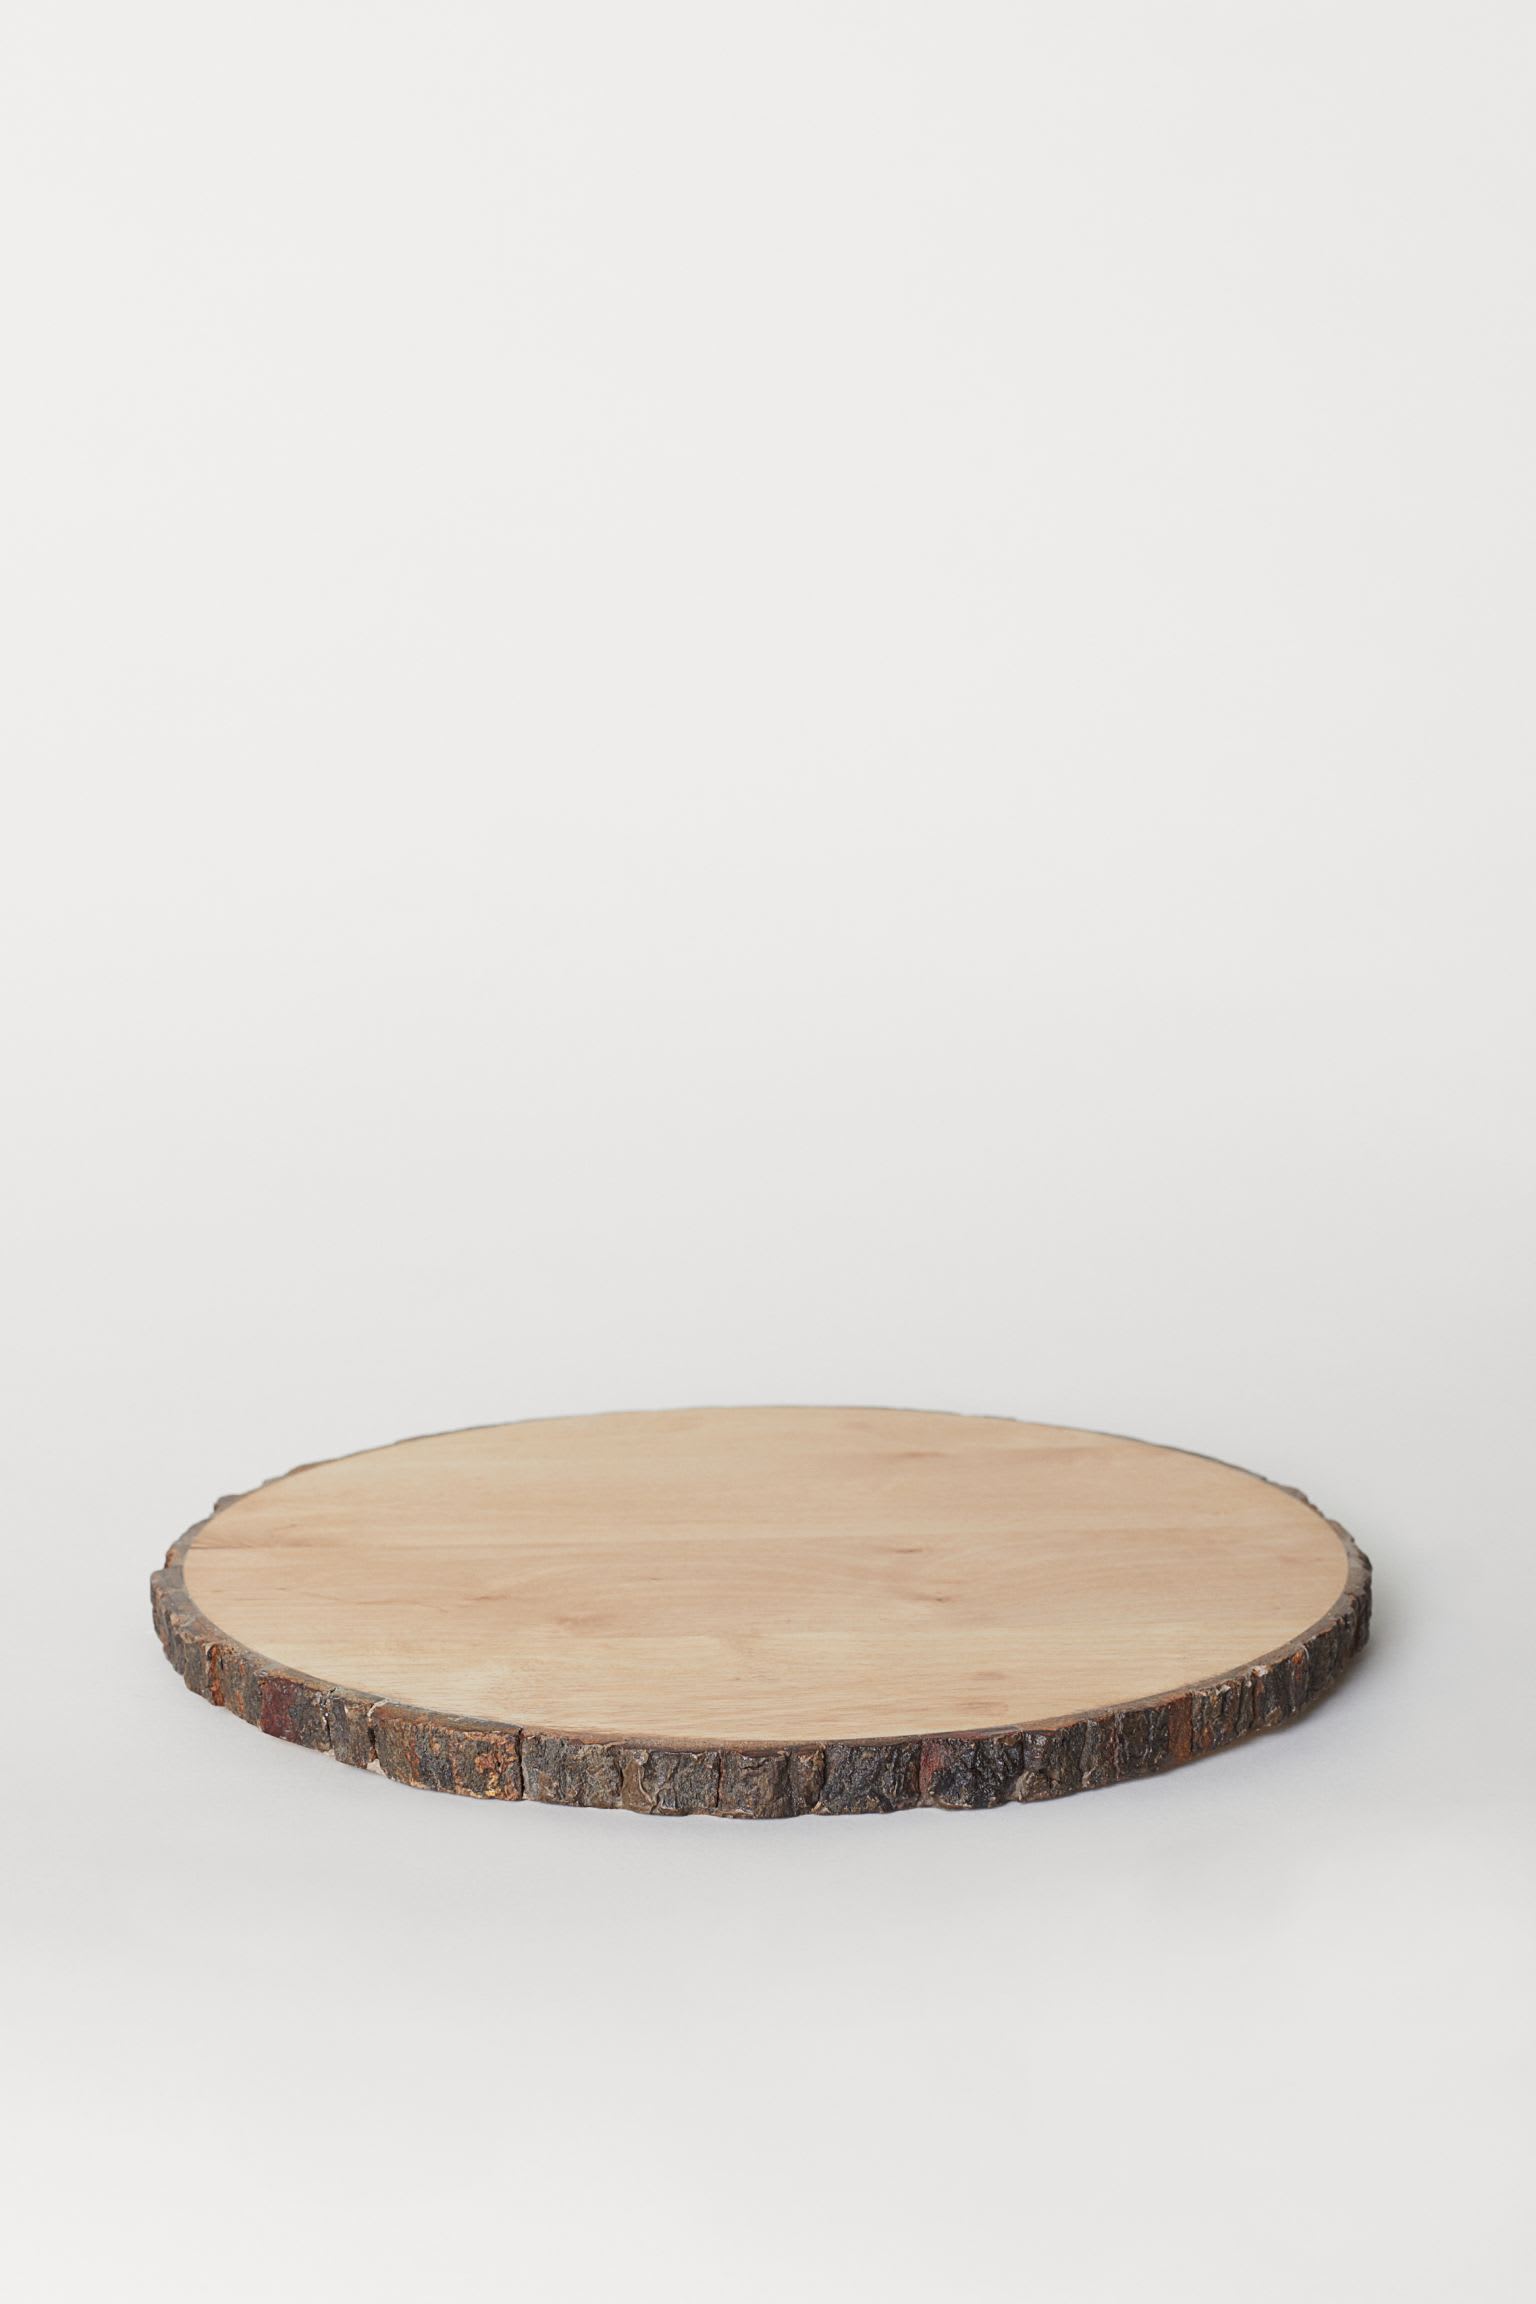 birch bark cutting board  s 29 95 rm74 95  data